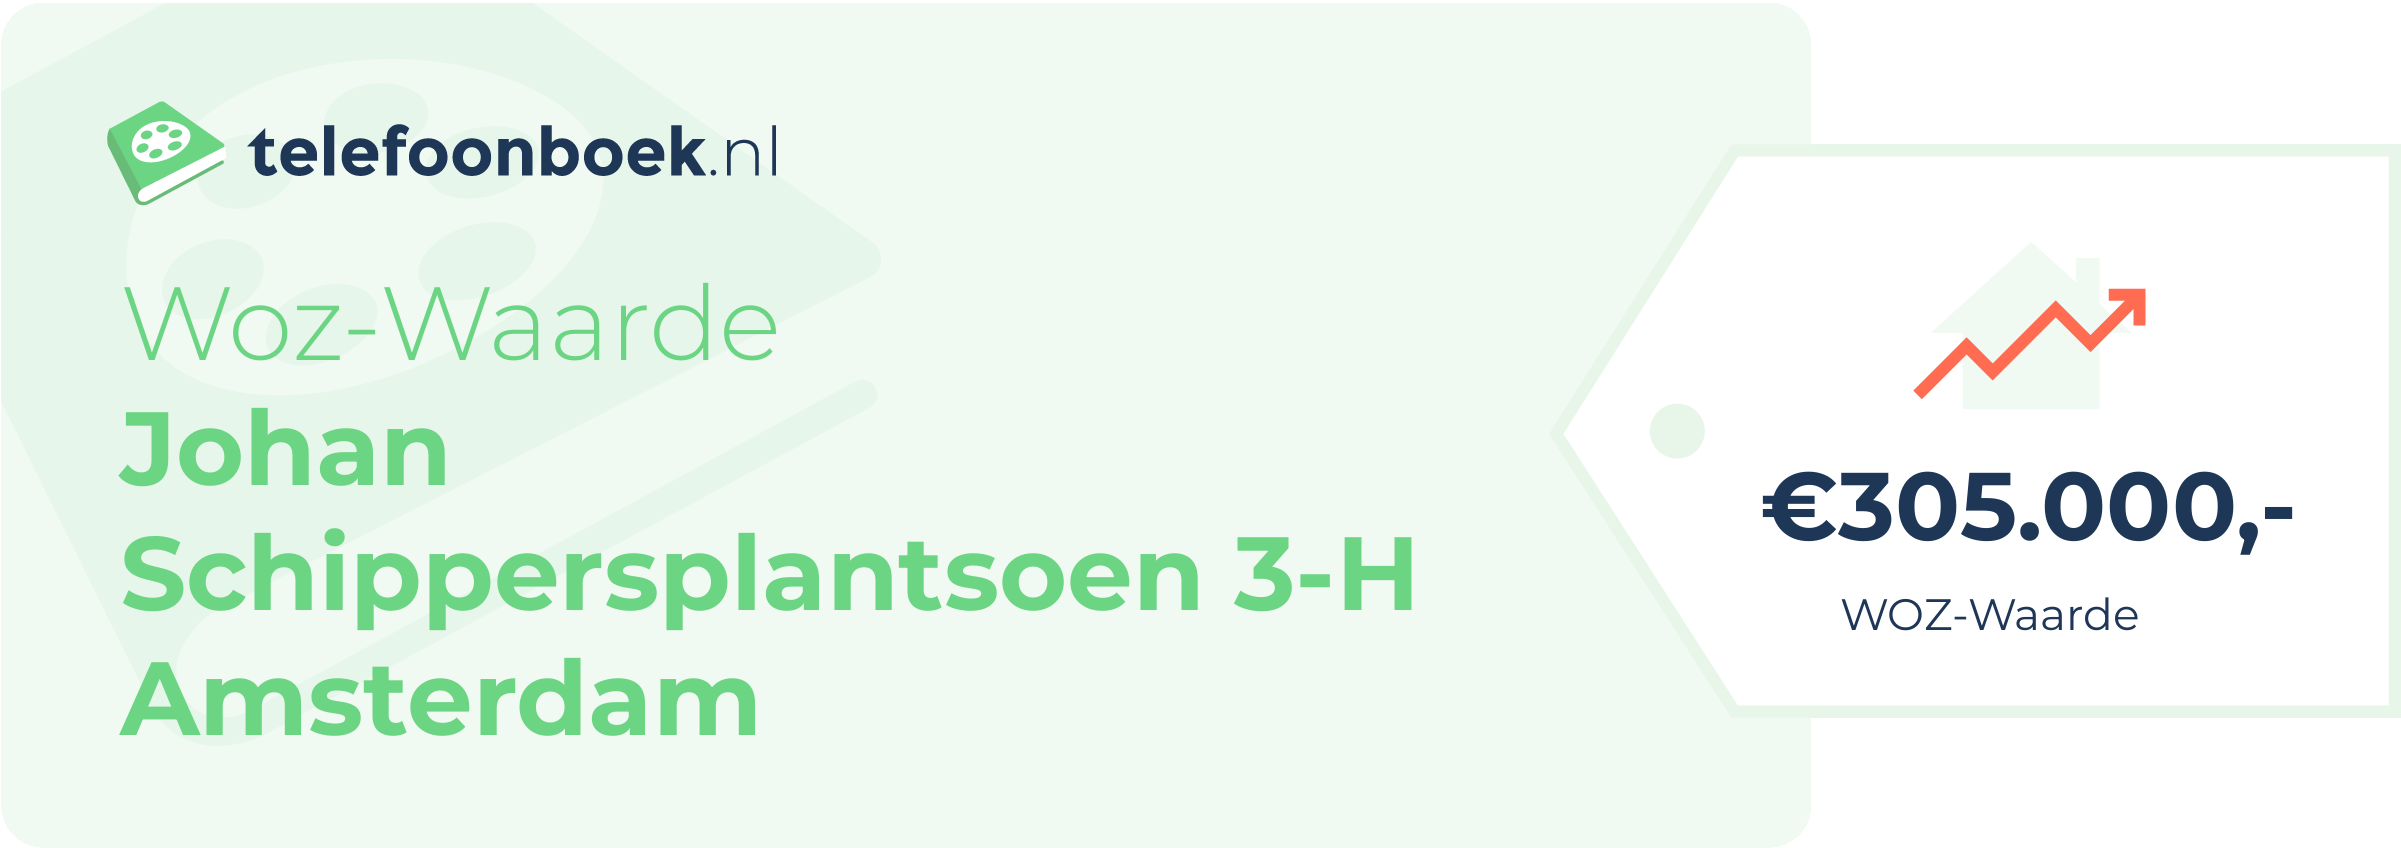 WOZ-waarde Johan Schippersplantsoen 3-H Amsterdam